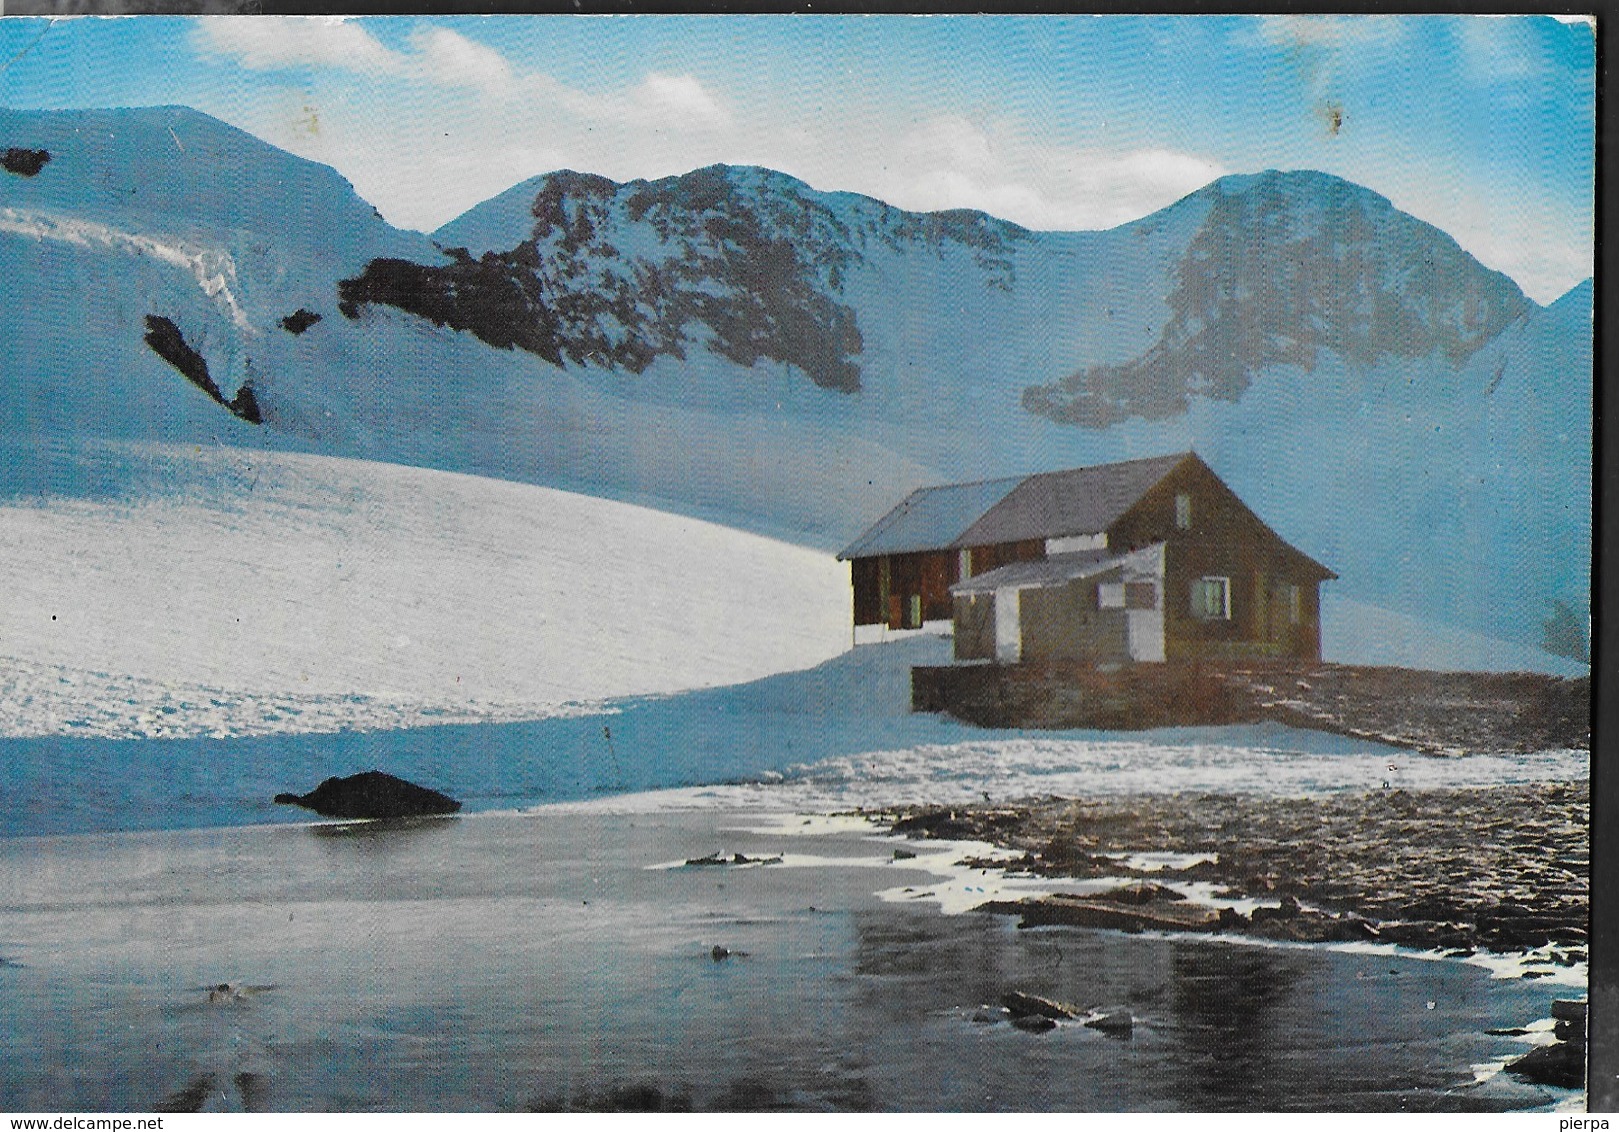 MONTE ROSA - CAPANNA Q. SELLA - VIAGGIATA 1972 FRANCOBOLLO ASPORTATO - Alpinisme